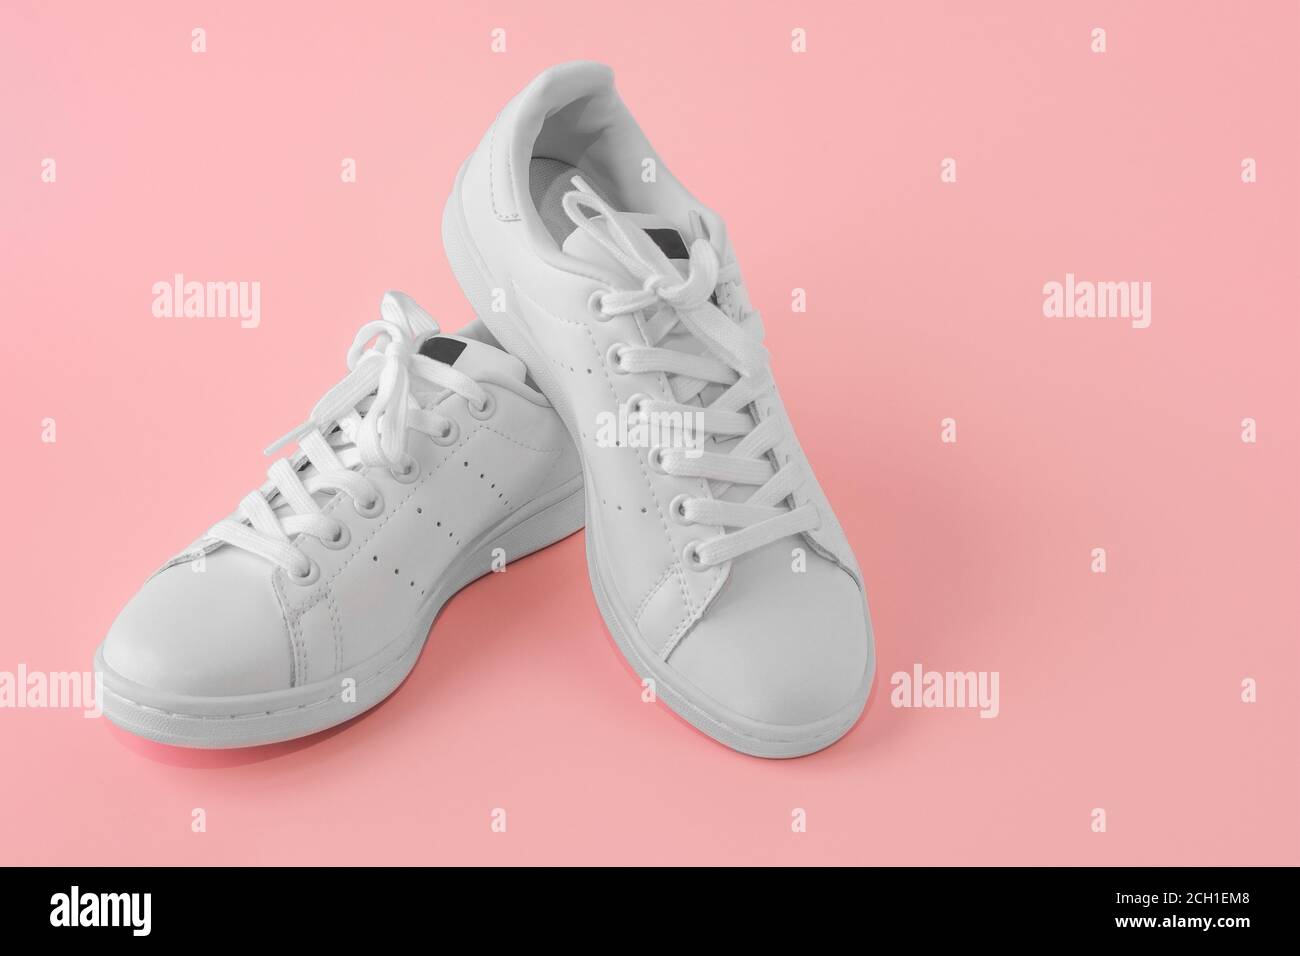 Paar neue weiße Sneakers auf rosa Hintergrund. Neue weiße Leder Sneaker  Sportschuhe. Sportschuhe für Laufen, Tennis, Joggen. Copyspace  Stockfotografie - Alamy